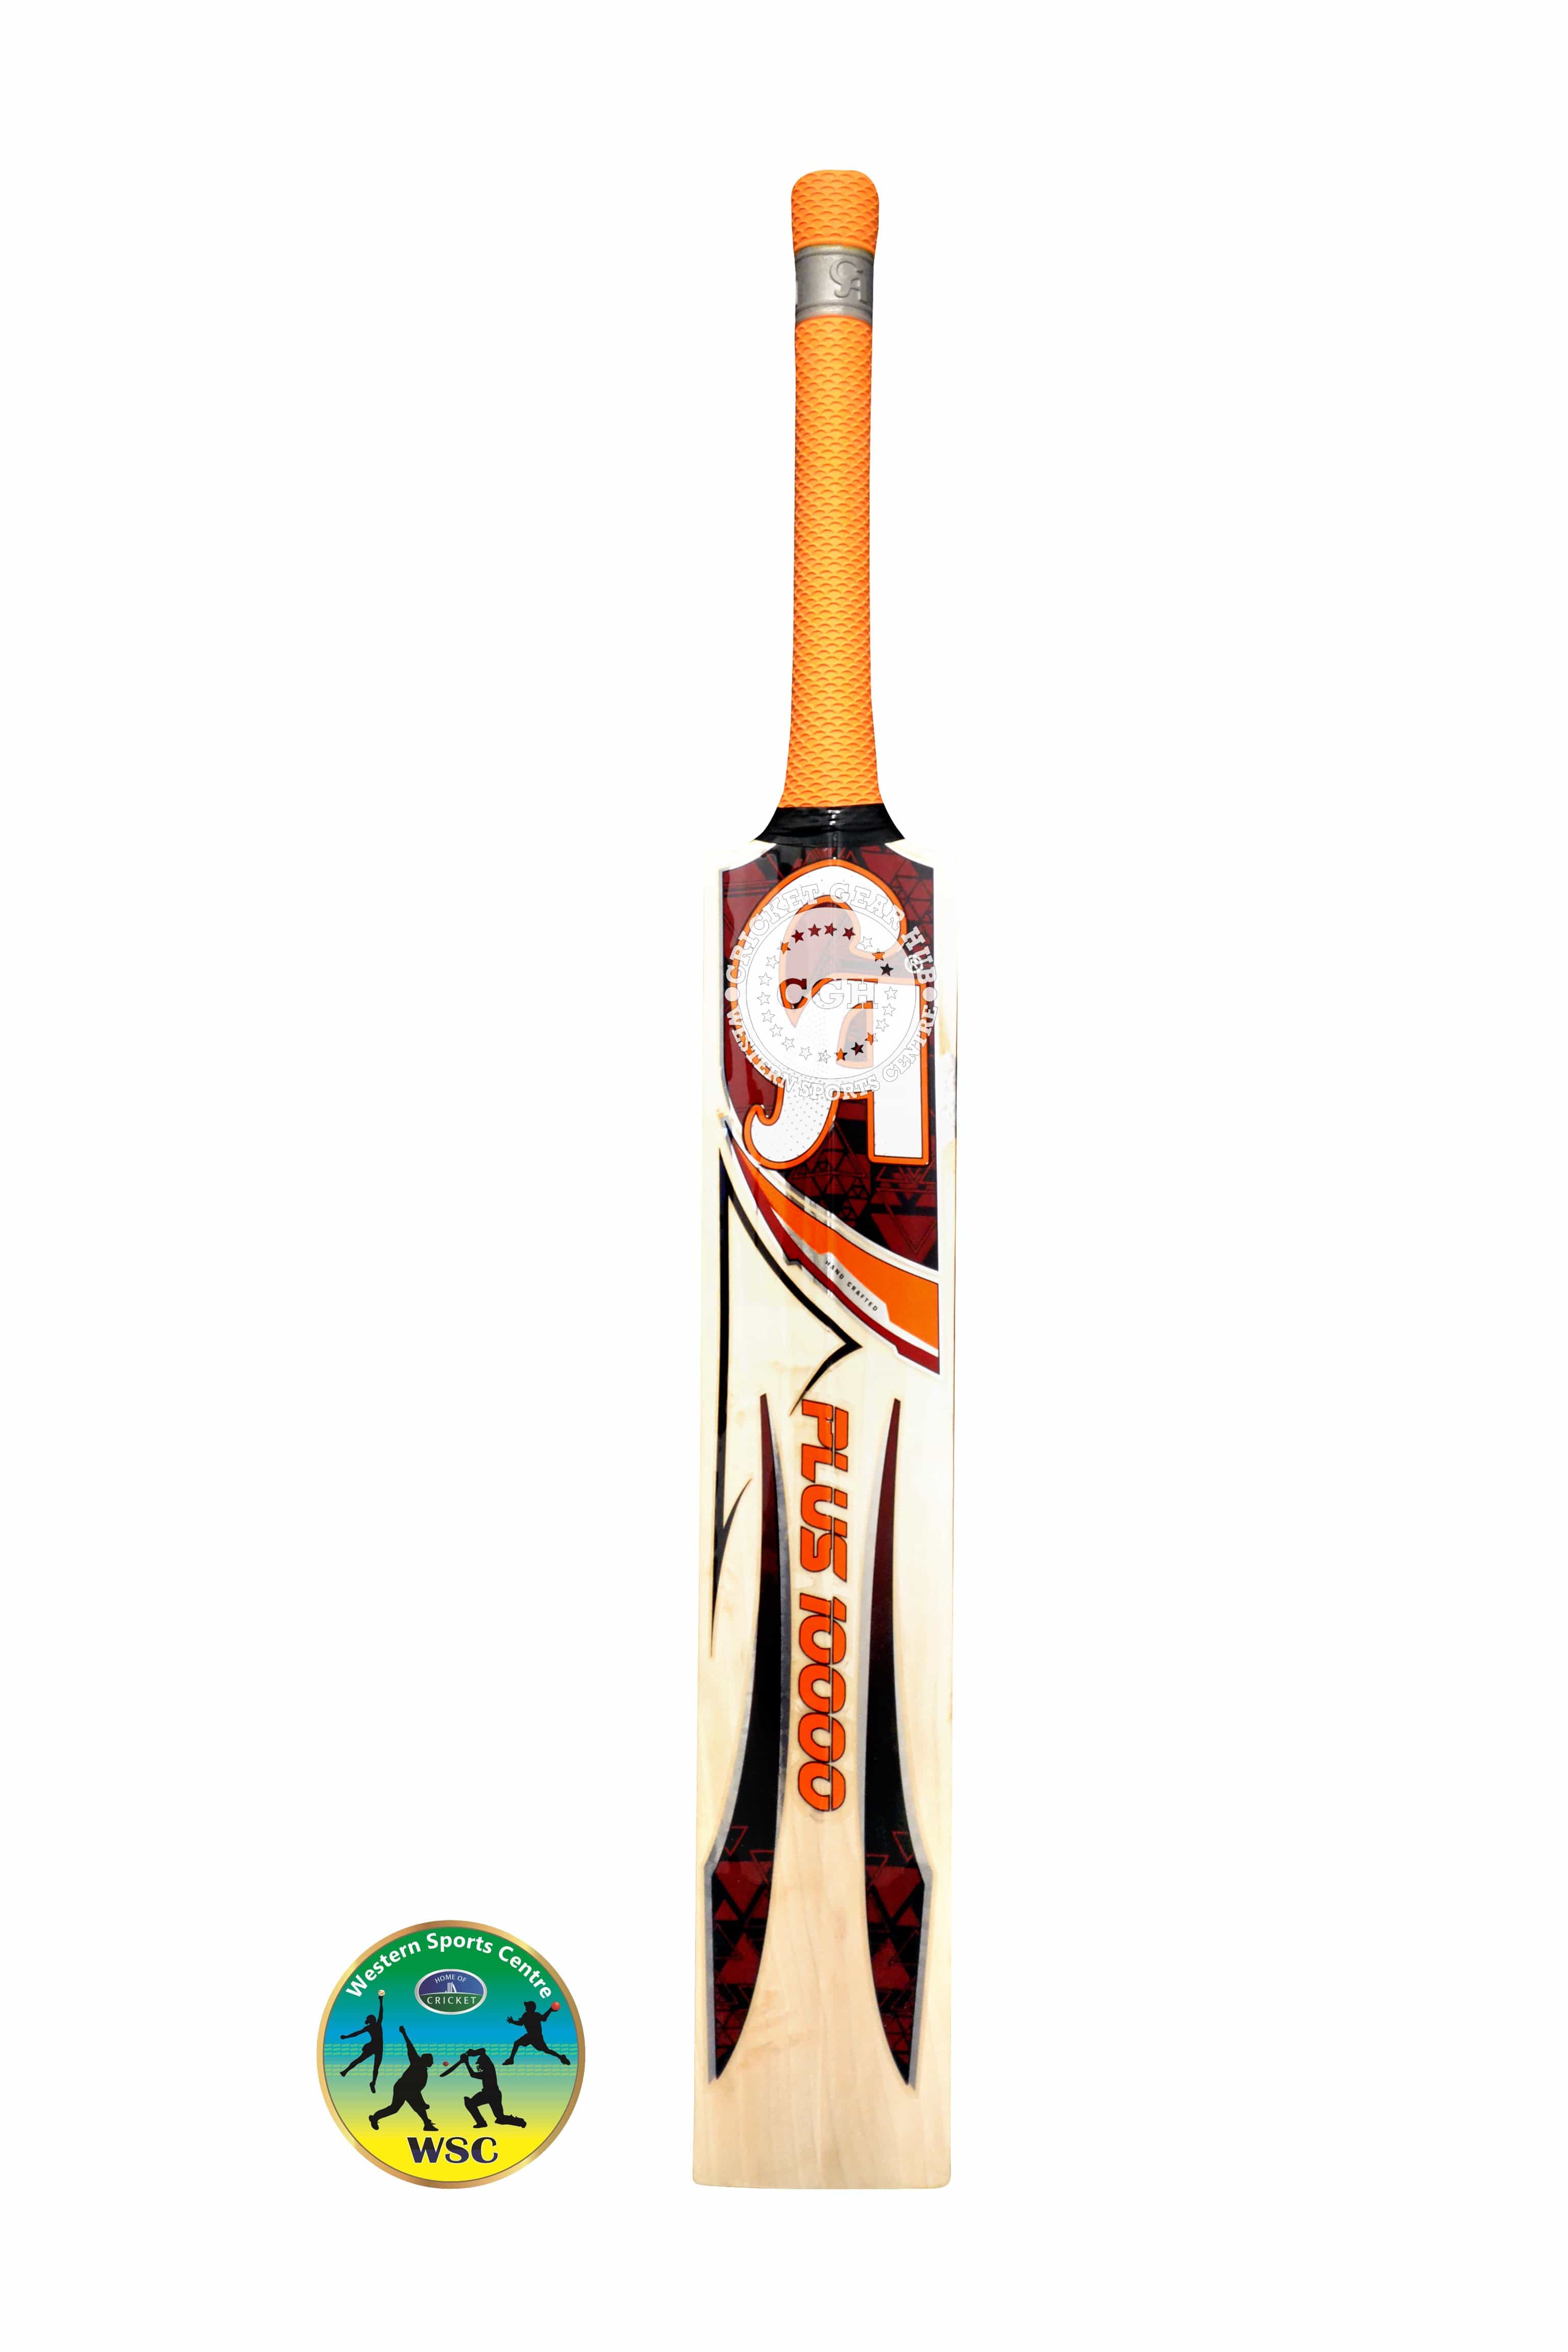 CA Cricket Bats Short Hand / 2'8 CA Plus 10000 Adult Cricket Bat